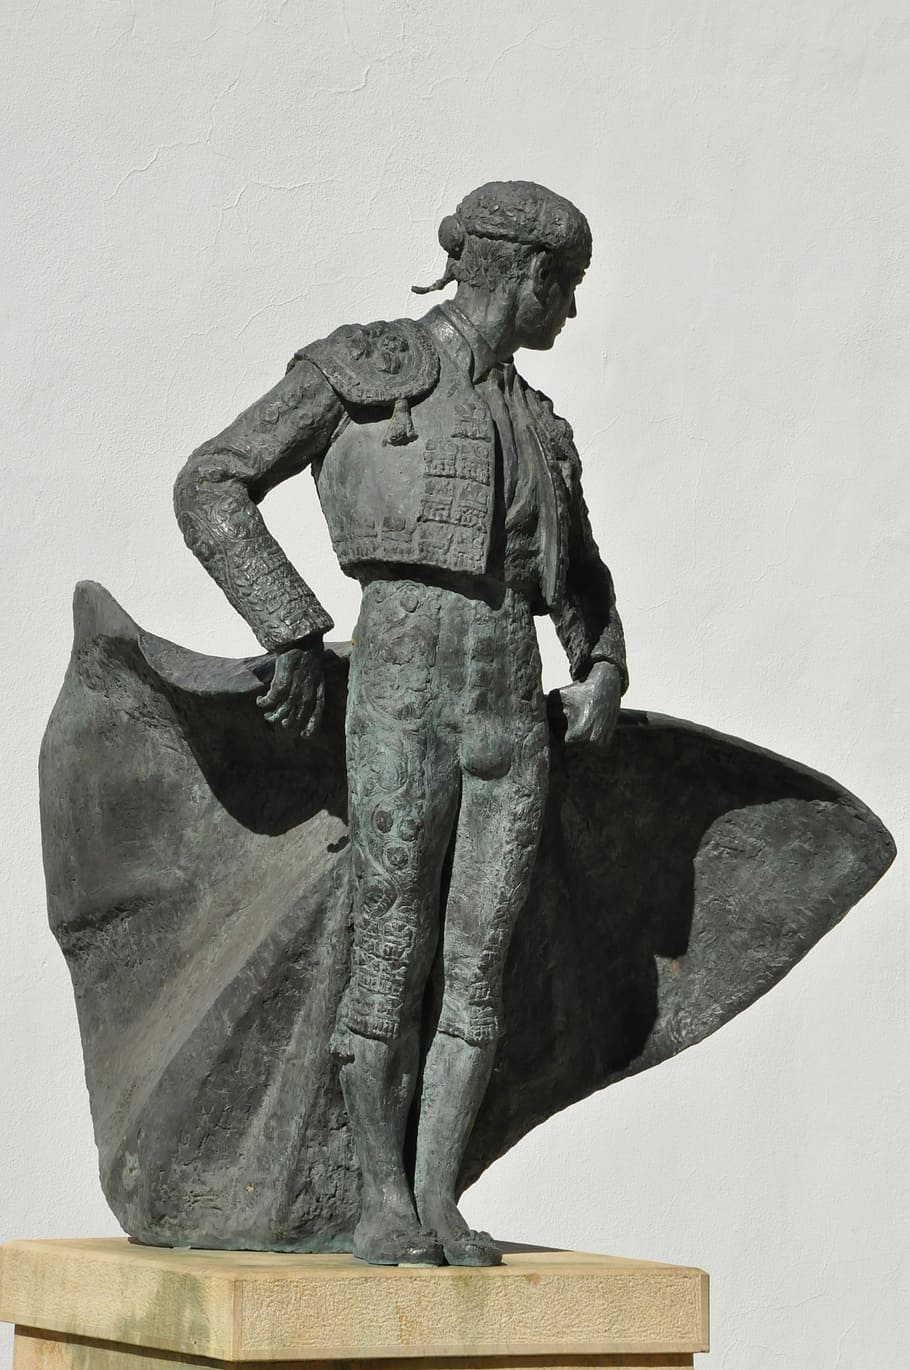 Bullfighter, Spaniard, Statue, Male, the statue, spain, roundabout, costa de la luz, sculpture, adult